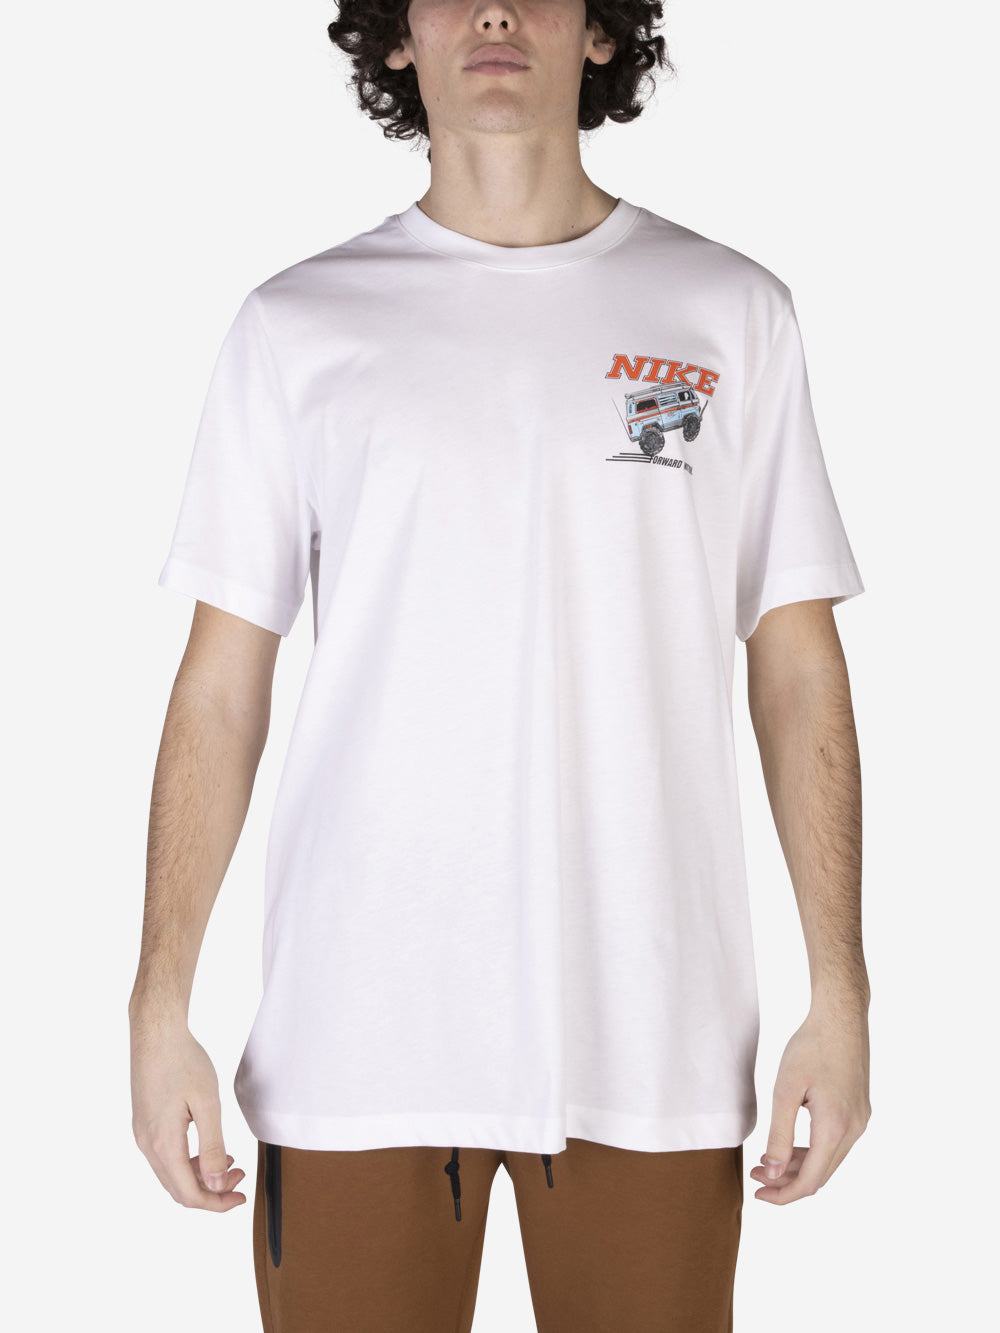 Men's Nike Sportswear Sole Rally T-Shirt